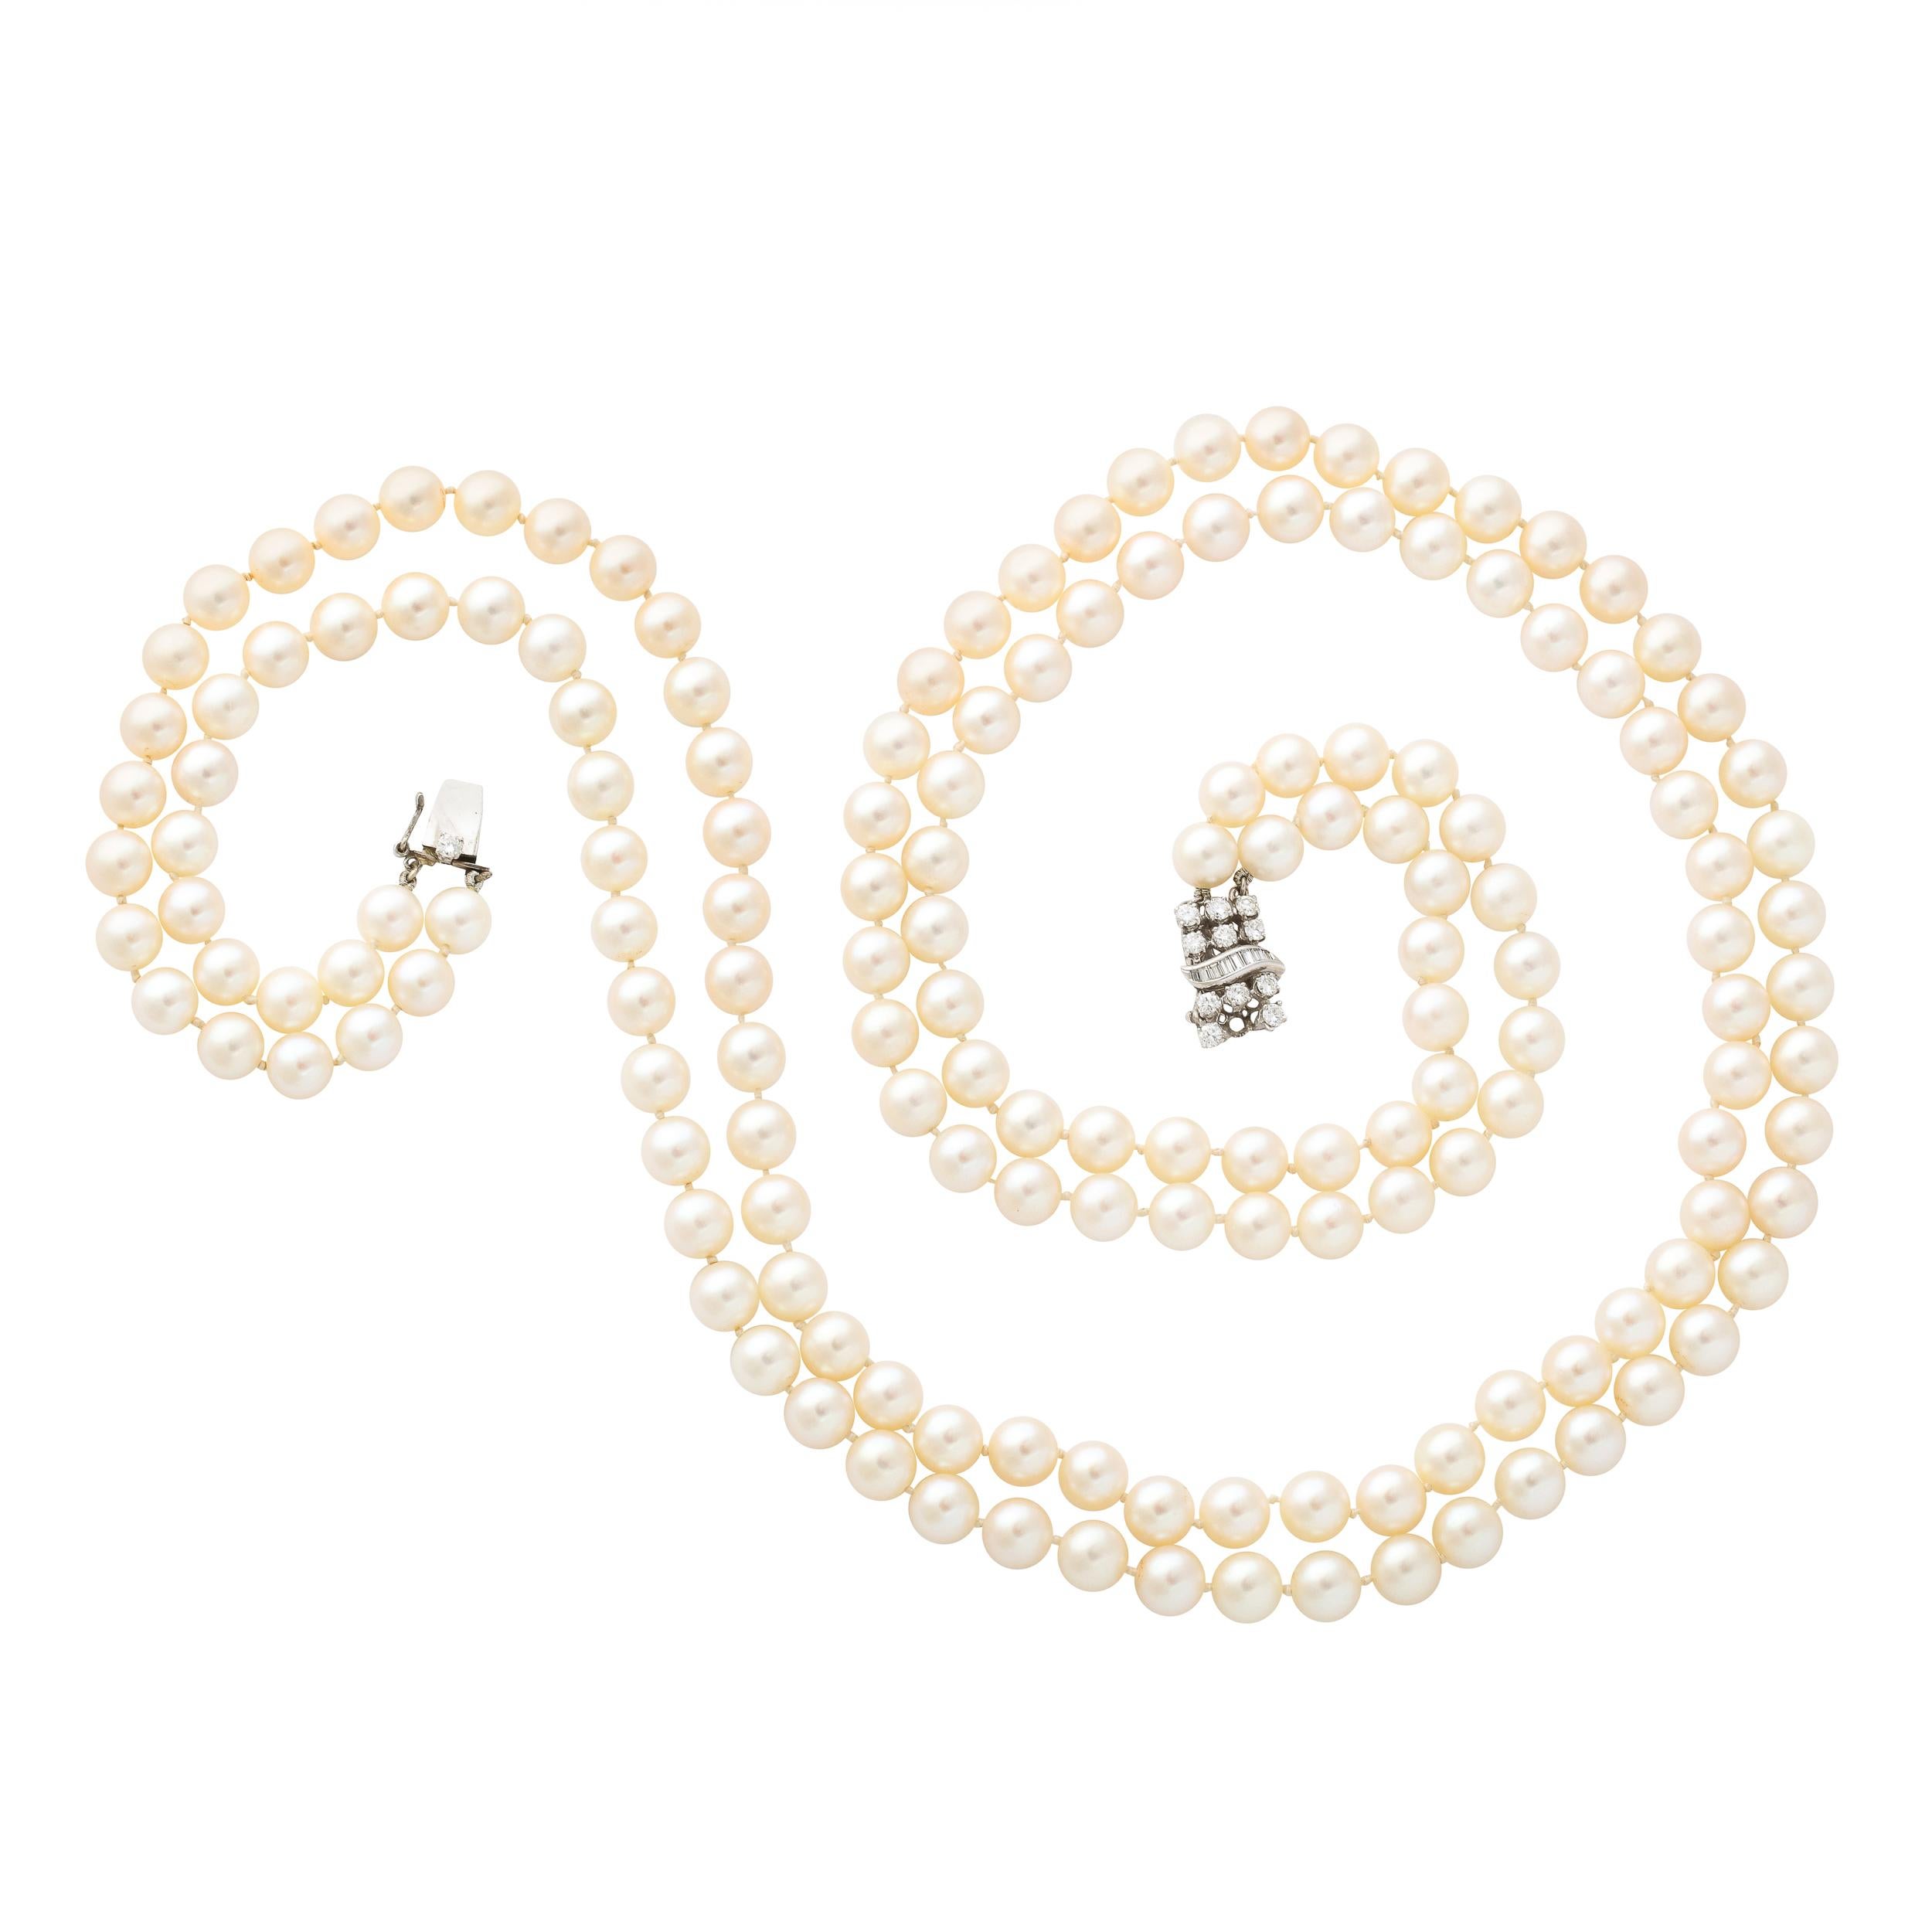 Diese elegante doppelreihige Perlenkette besteht aus 170 7 mm großen Zuchtperlen von feiner Qualität mit leicht rosafarbenem Glanz und ist mit einem Verschluss aus Diamant- und 14-karätigem Weißgold versehen, der mit 12 runden Diamanten im